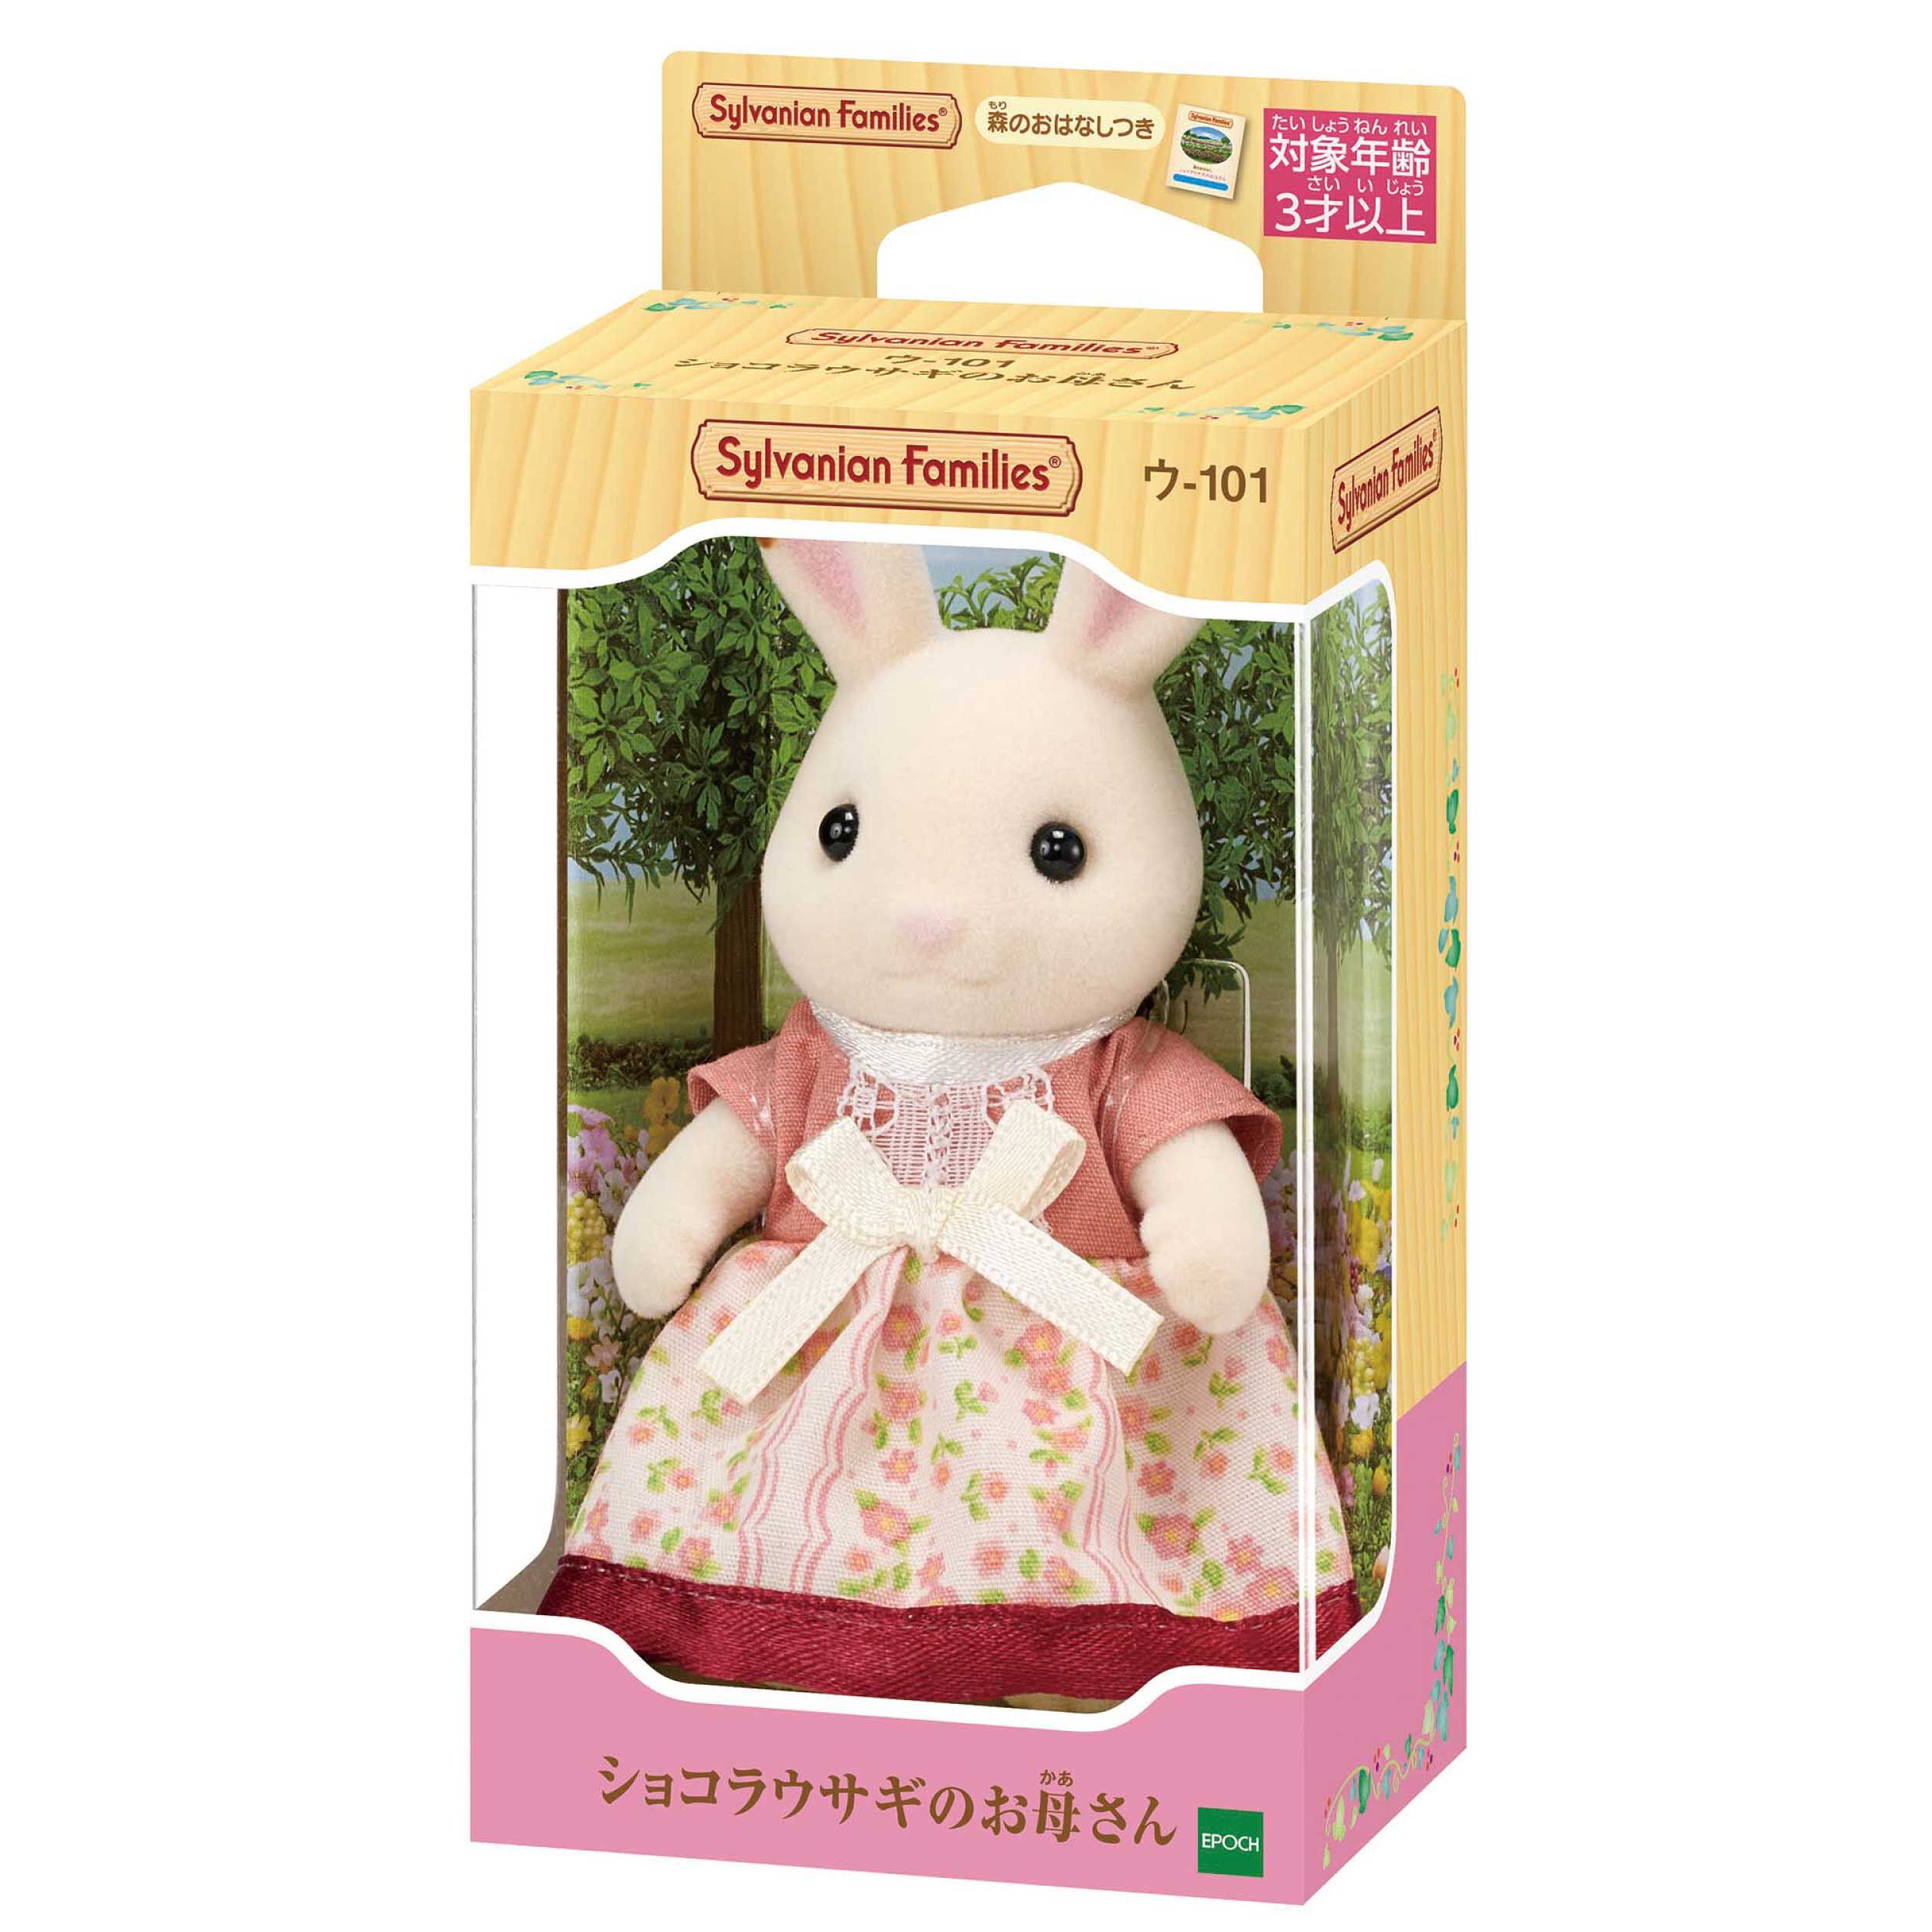 ショコラウサギのお母さん / 人形 - シルバニアファミリーオンライン 